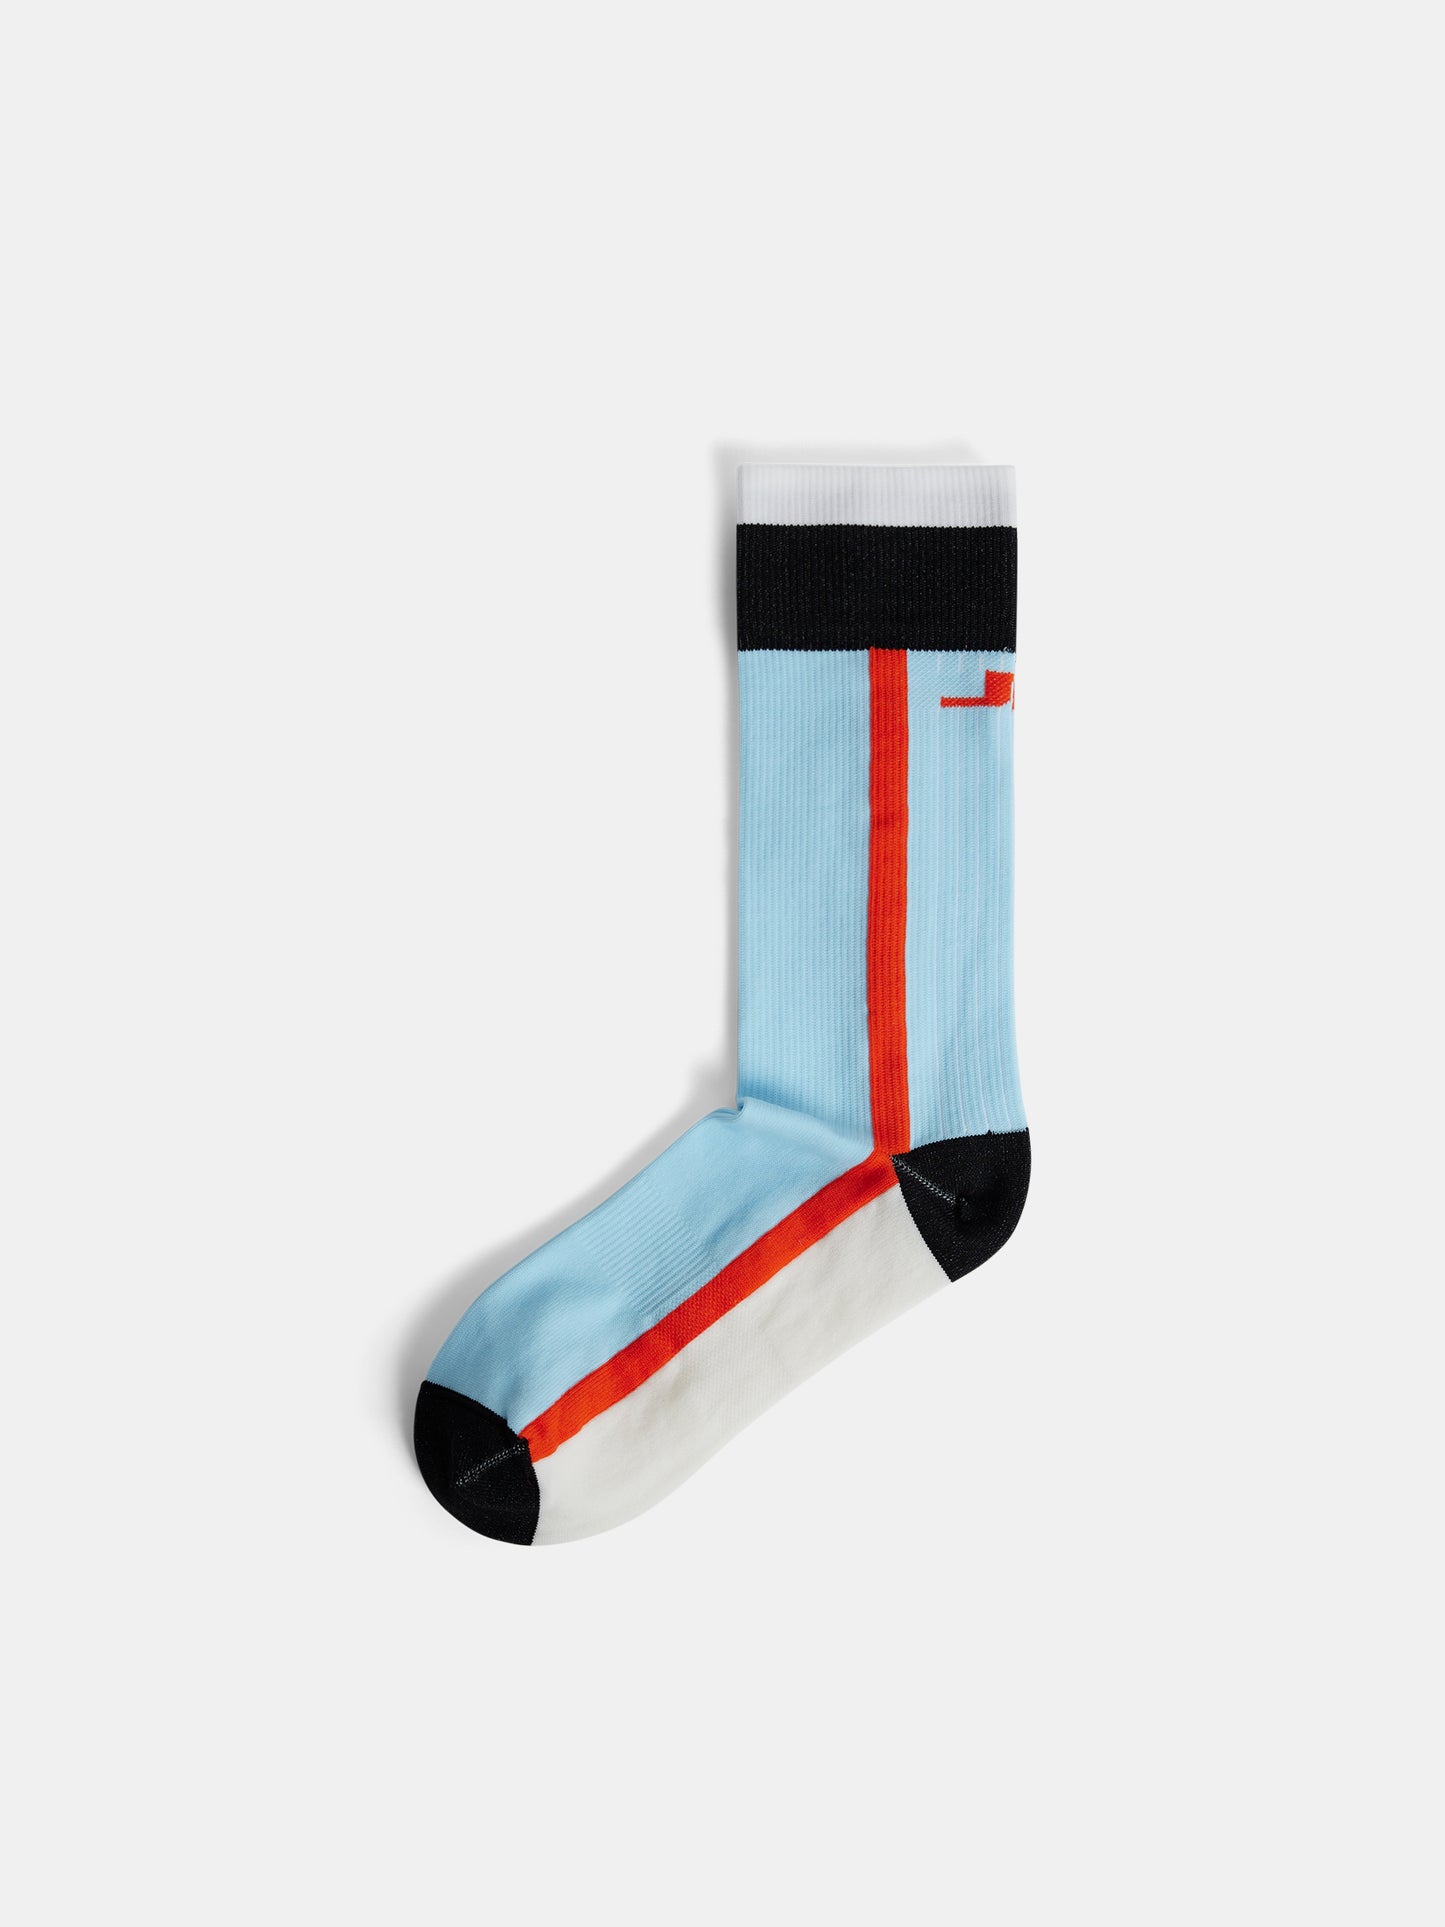 Maxima Sock / Atomizer